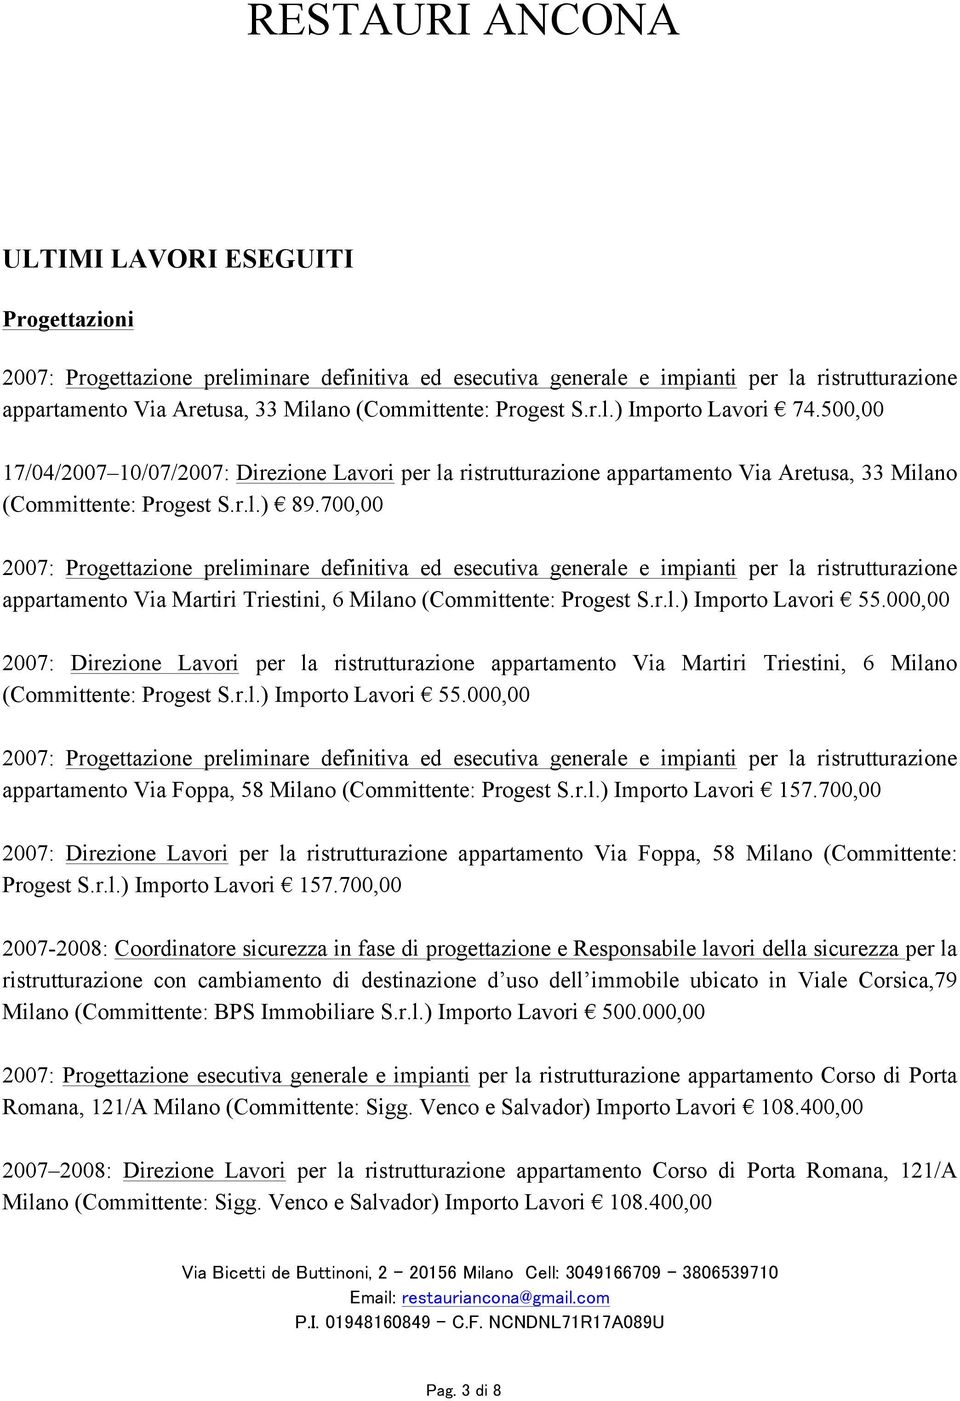 700,00 2007: Progettazione preliminare definitiva ed esecutiva generale e impianti per la ristrutturazione appartamento Via Martiri Triestini, 6 Milano (Committente: Progest S.r.l.) Importo Lavori 55.